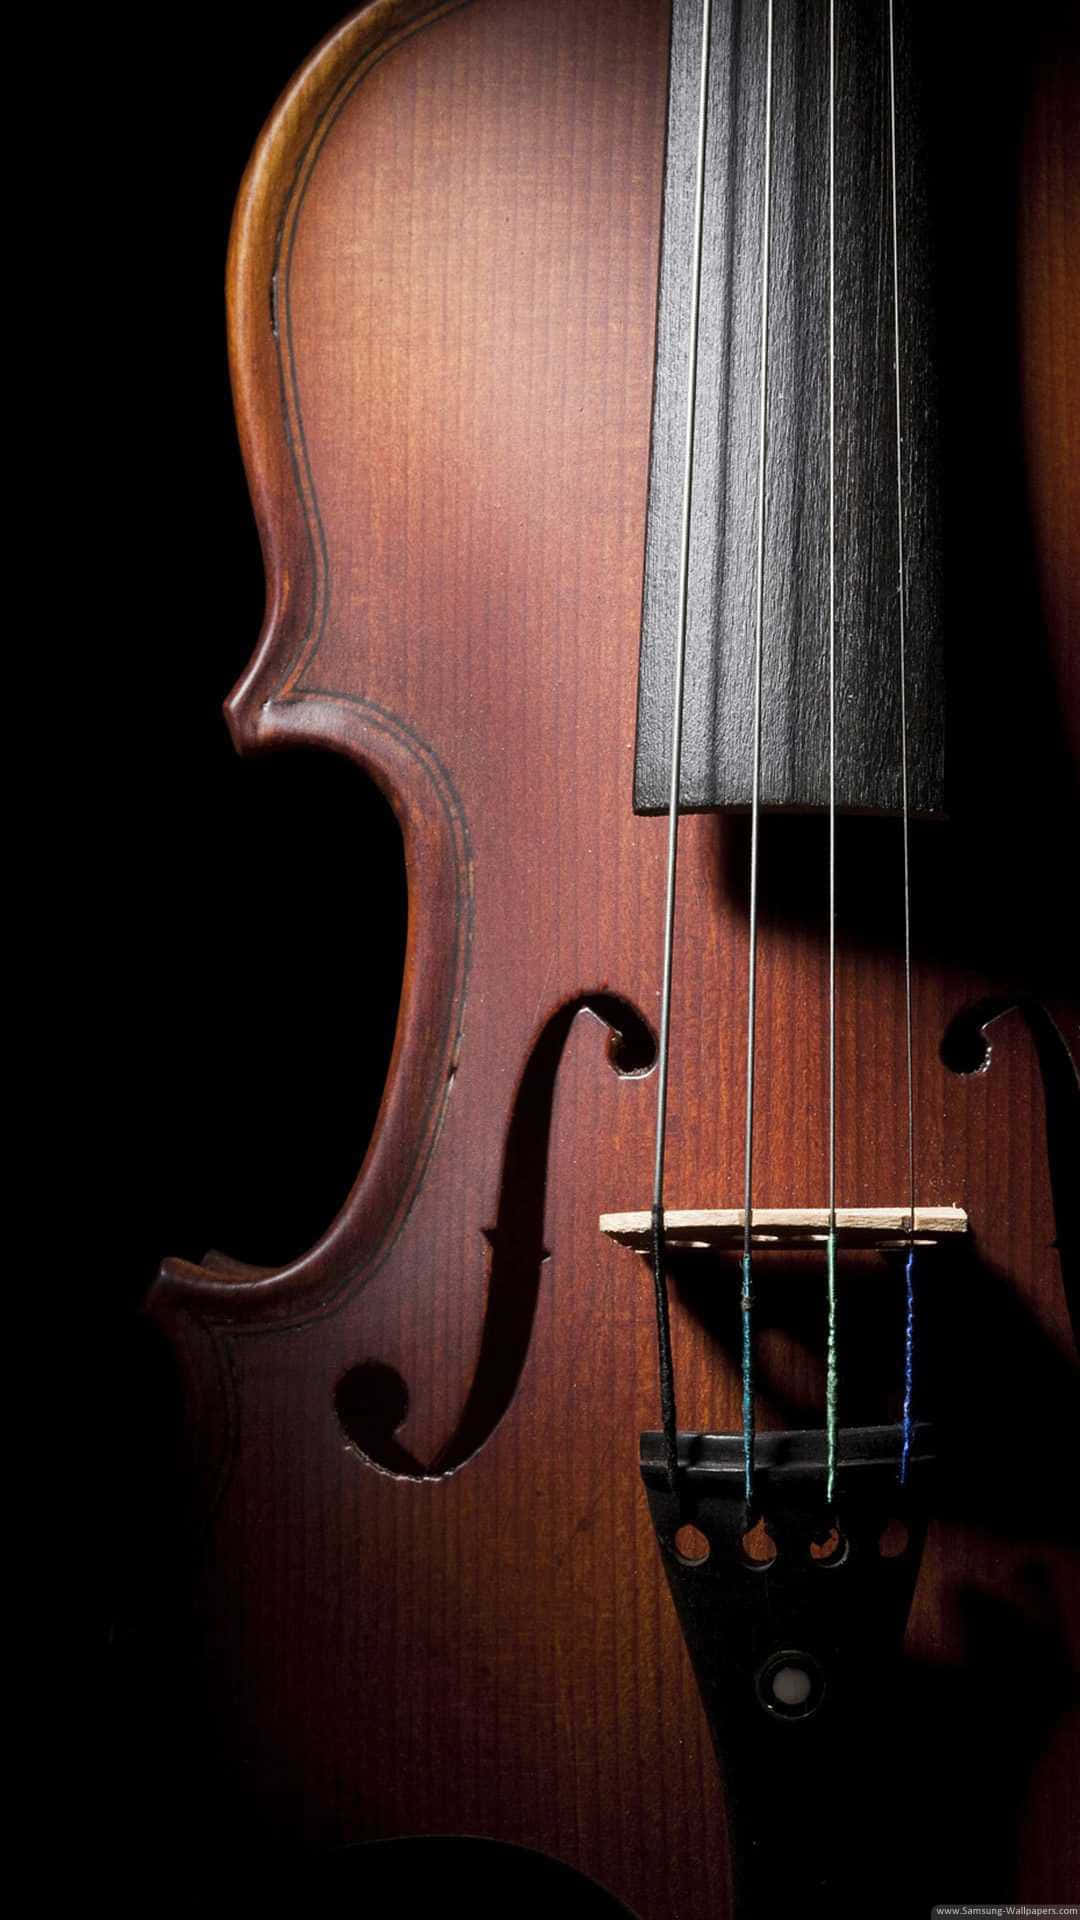 Violinodi Legno In Un'immagine Scura